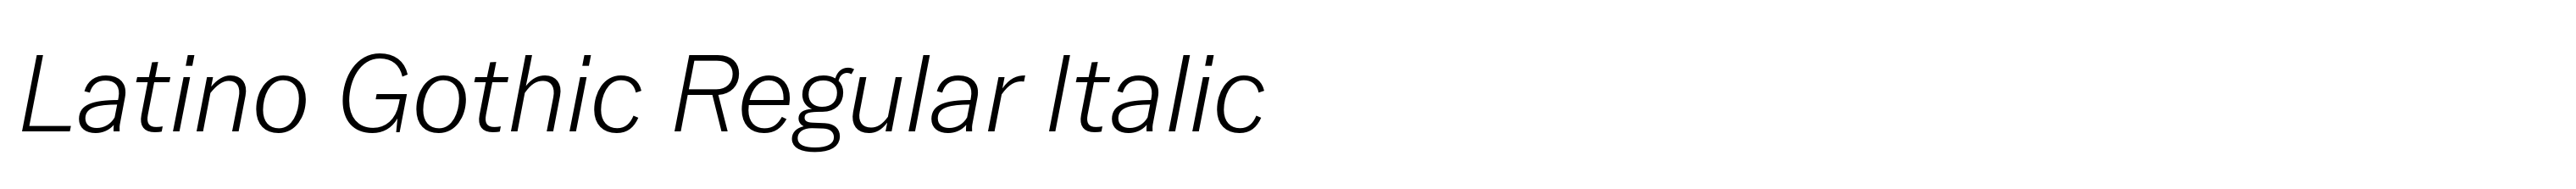 Latino Gothic Regular Italic